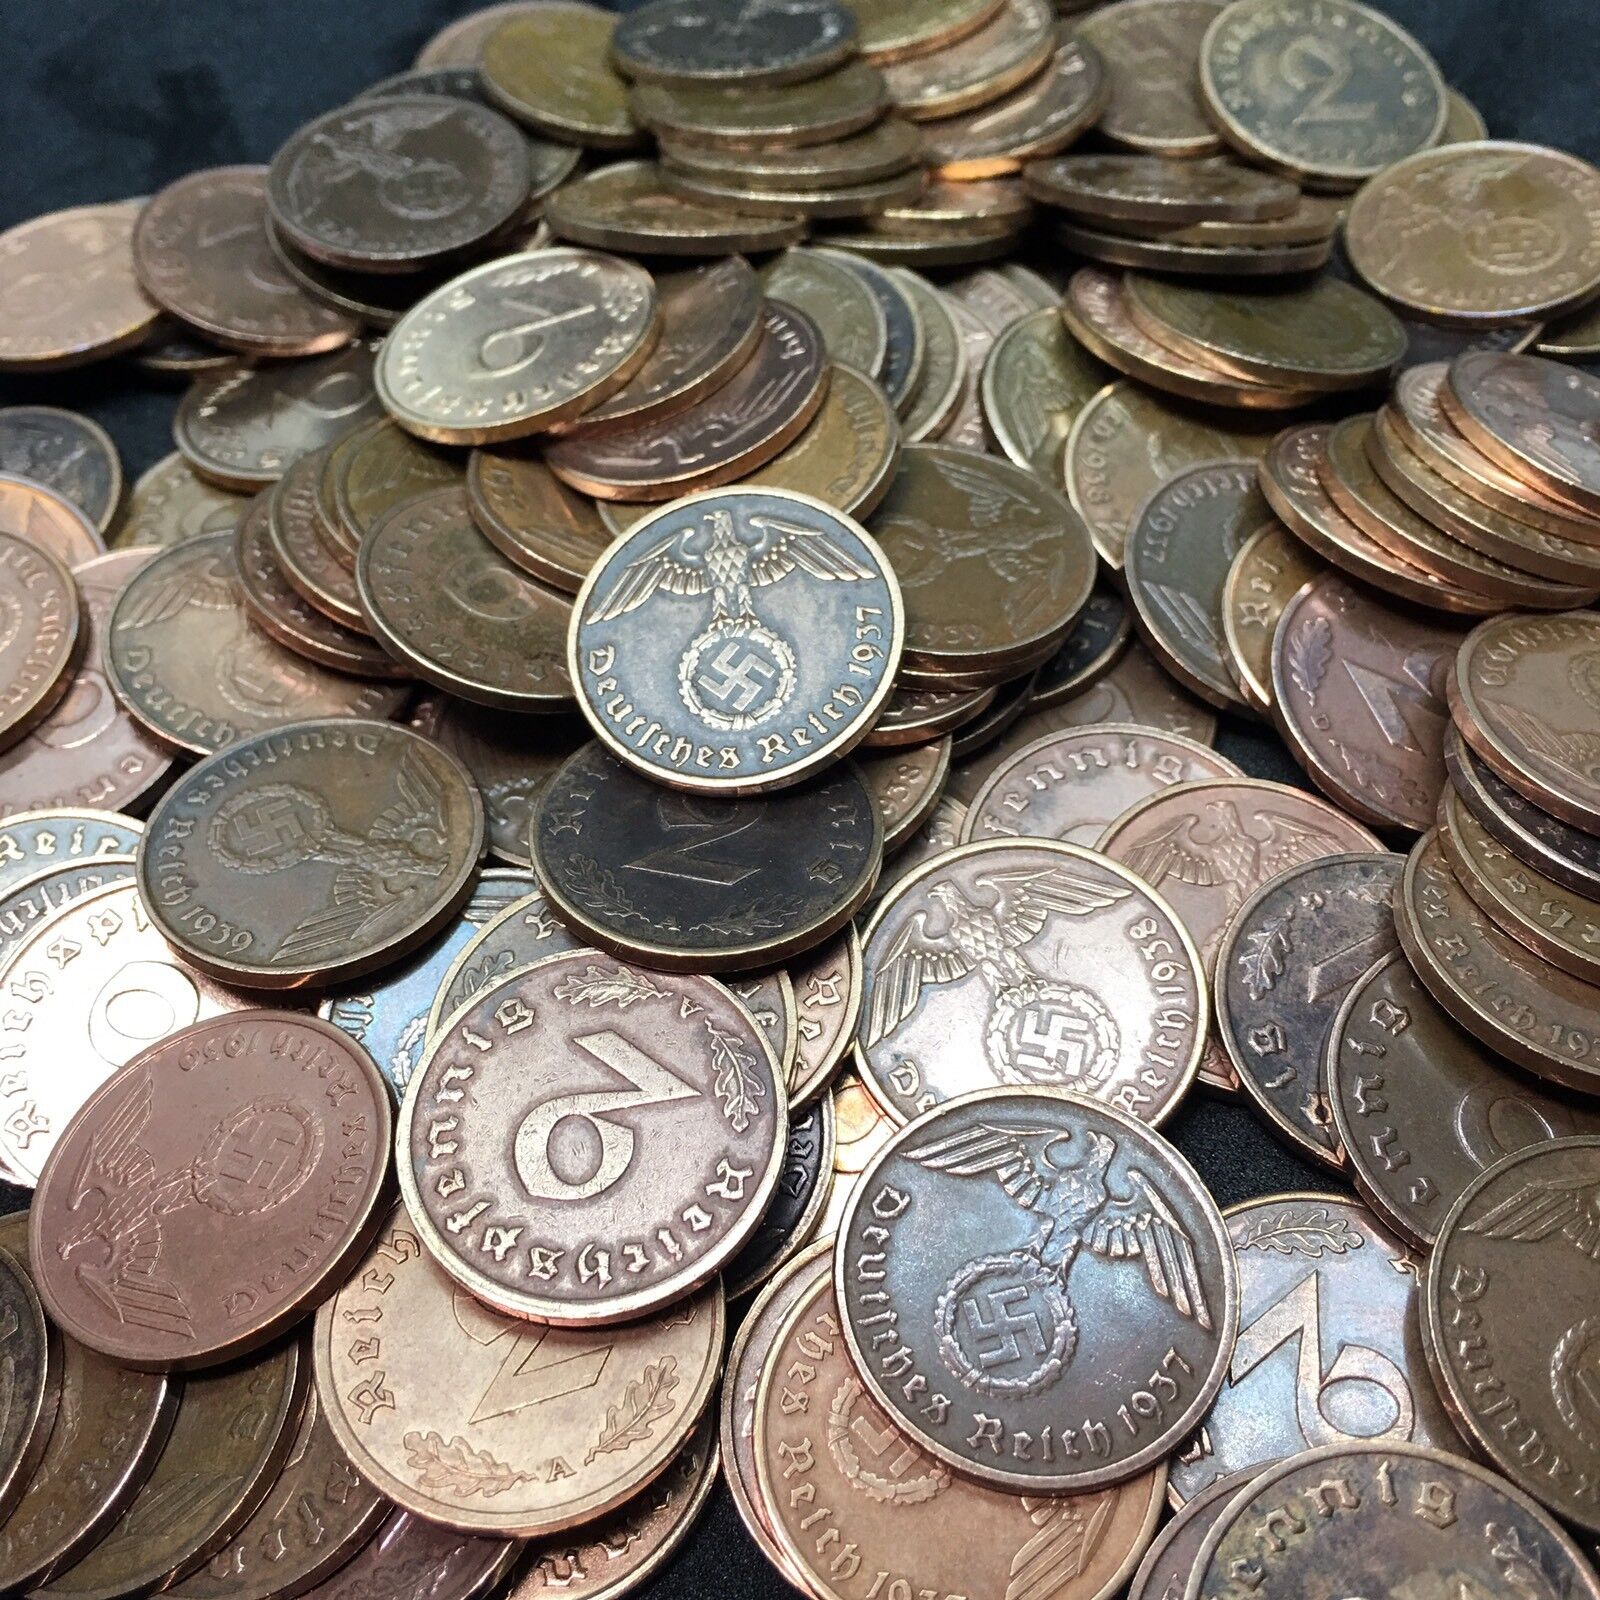 Rare WW2 German 2 RP Reichspfennig 3rd Reich Bronze Nazi Coin Buy 3 Get 1 Free Без бренда - фотография #4